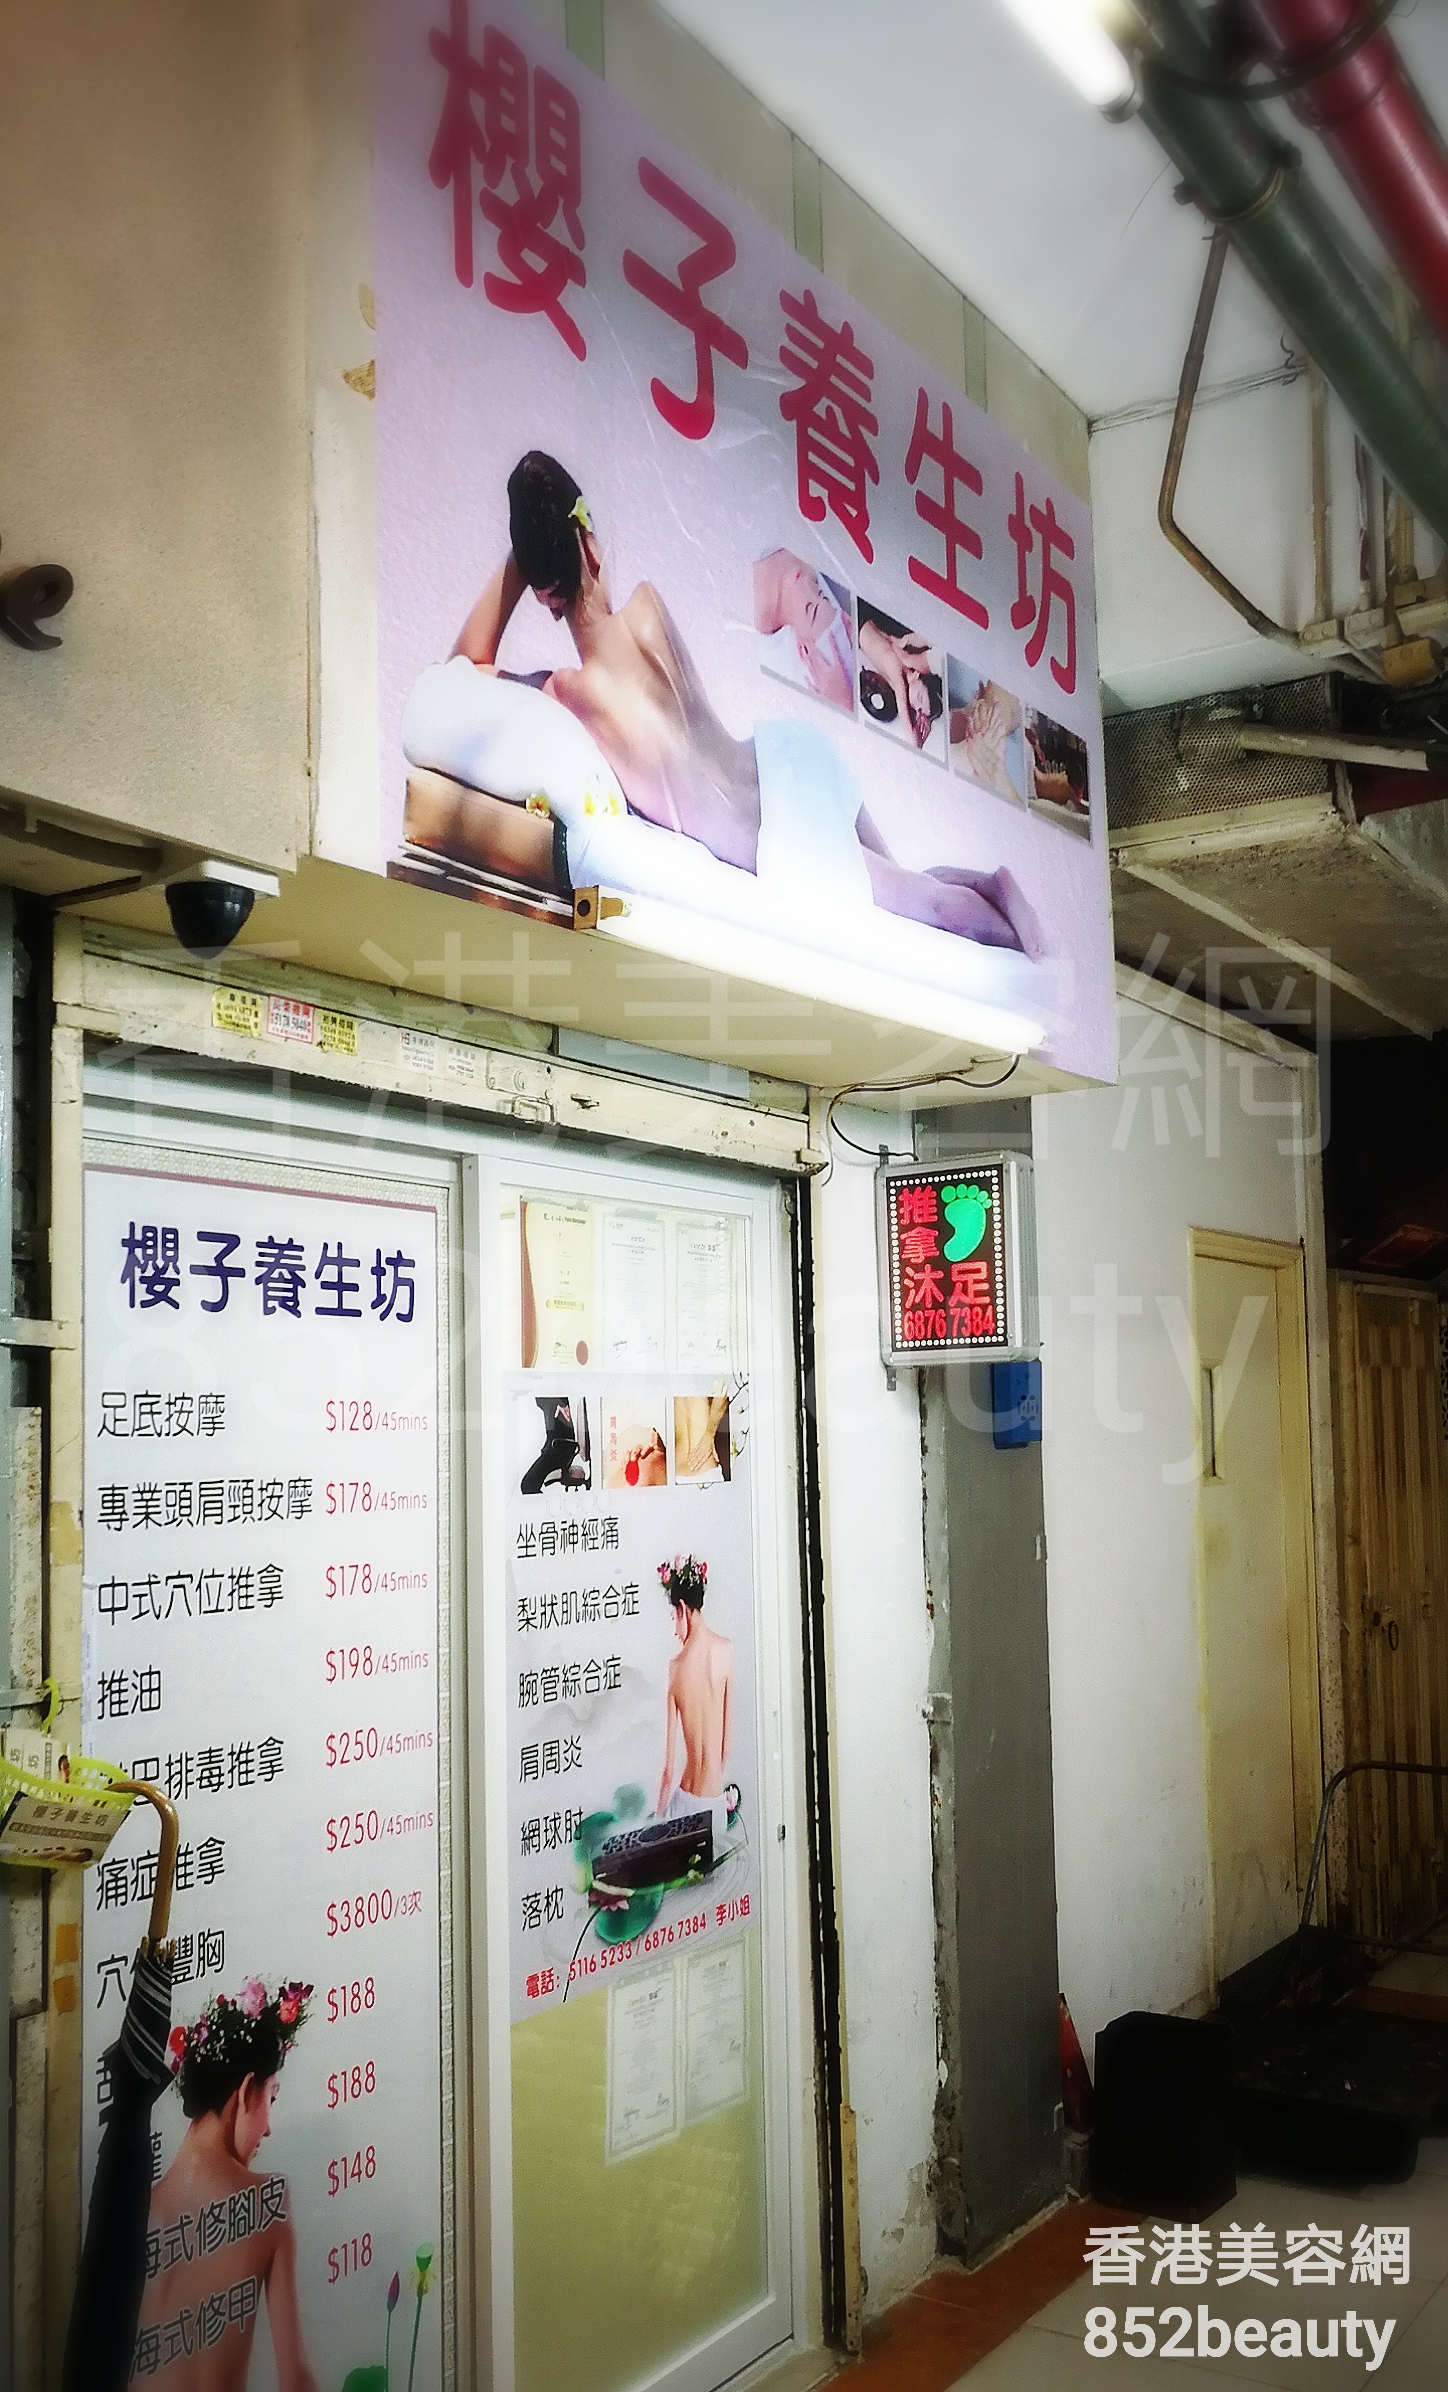 美容院 / 美容師 最高評分櫻子養生坊 @ 香港美容網 Hong Kong Beauty Salon